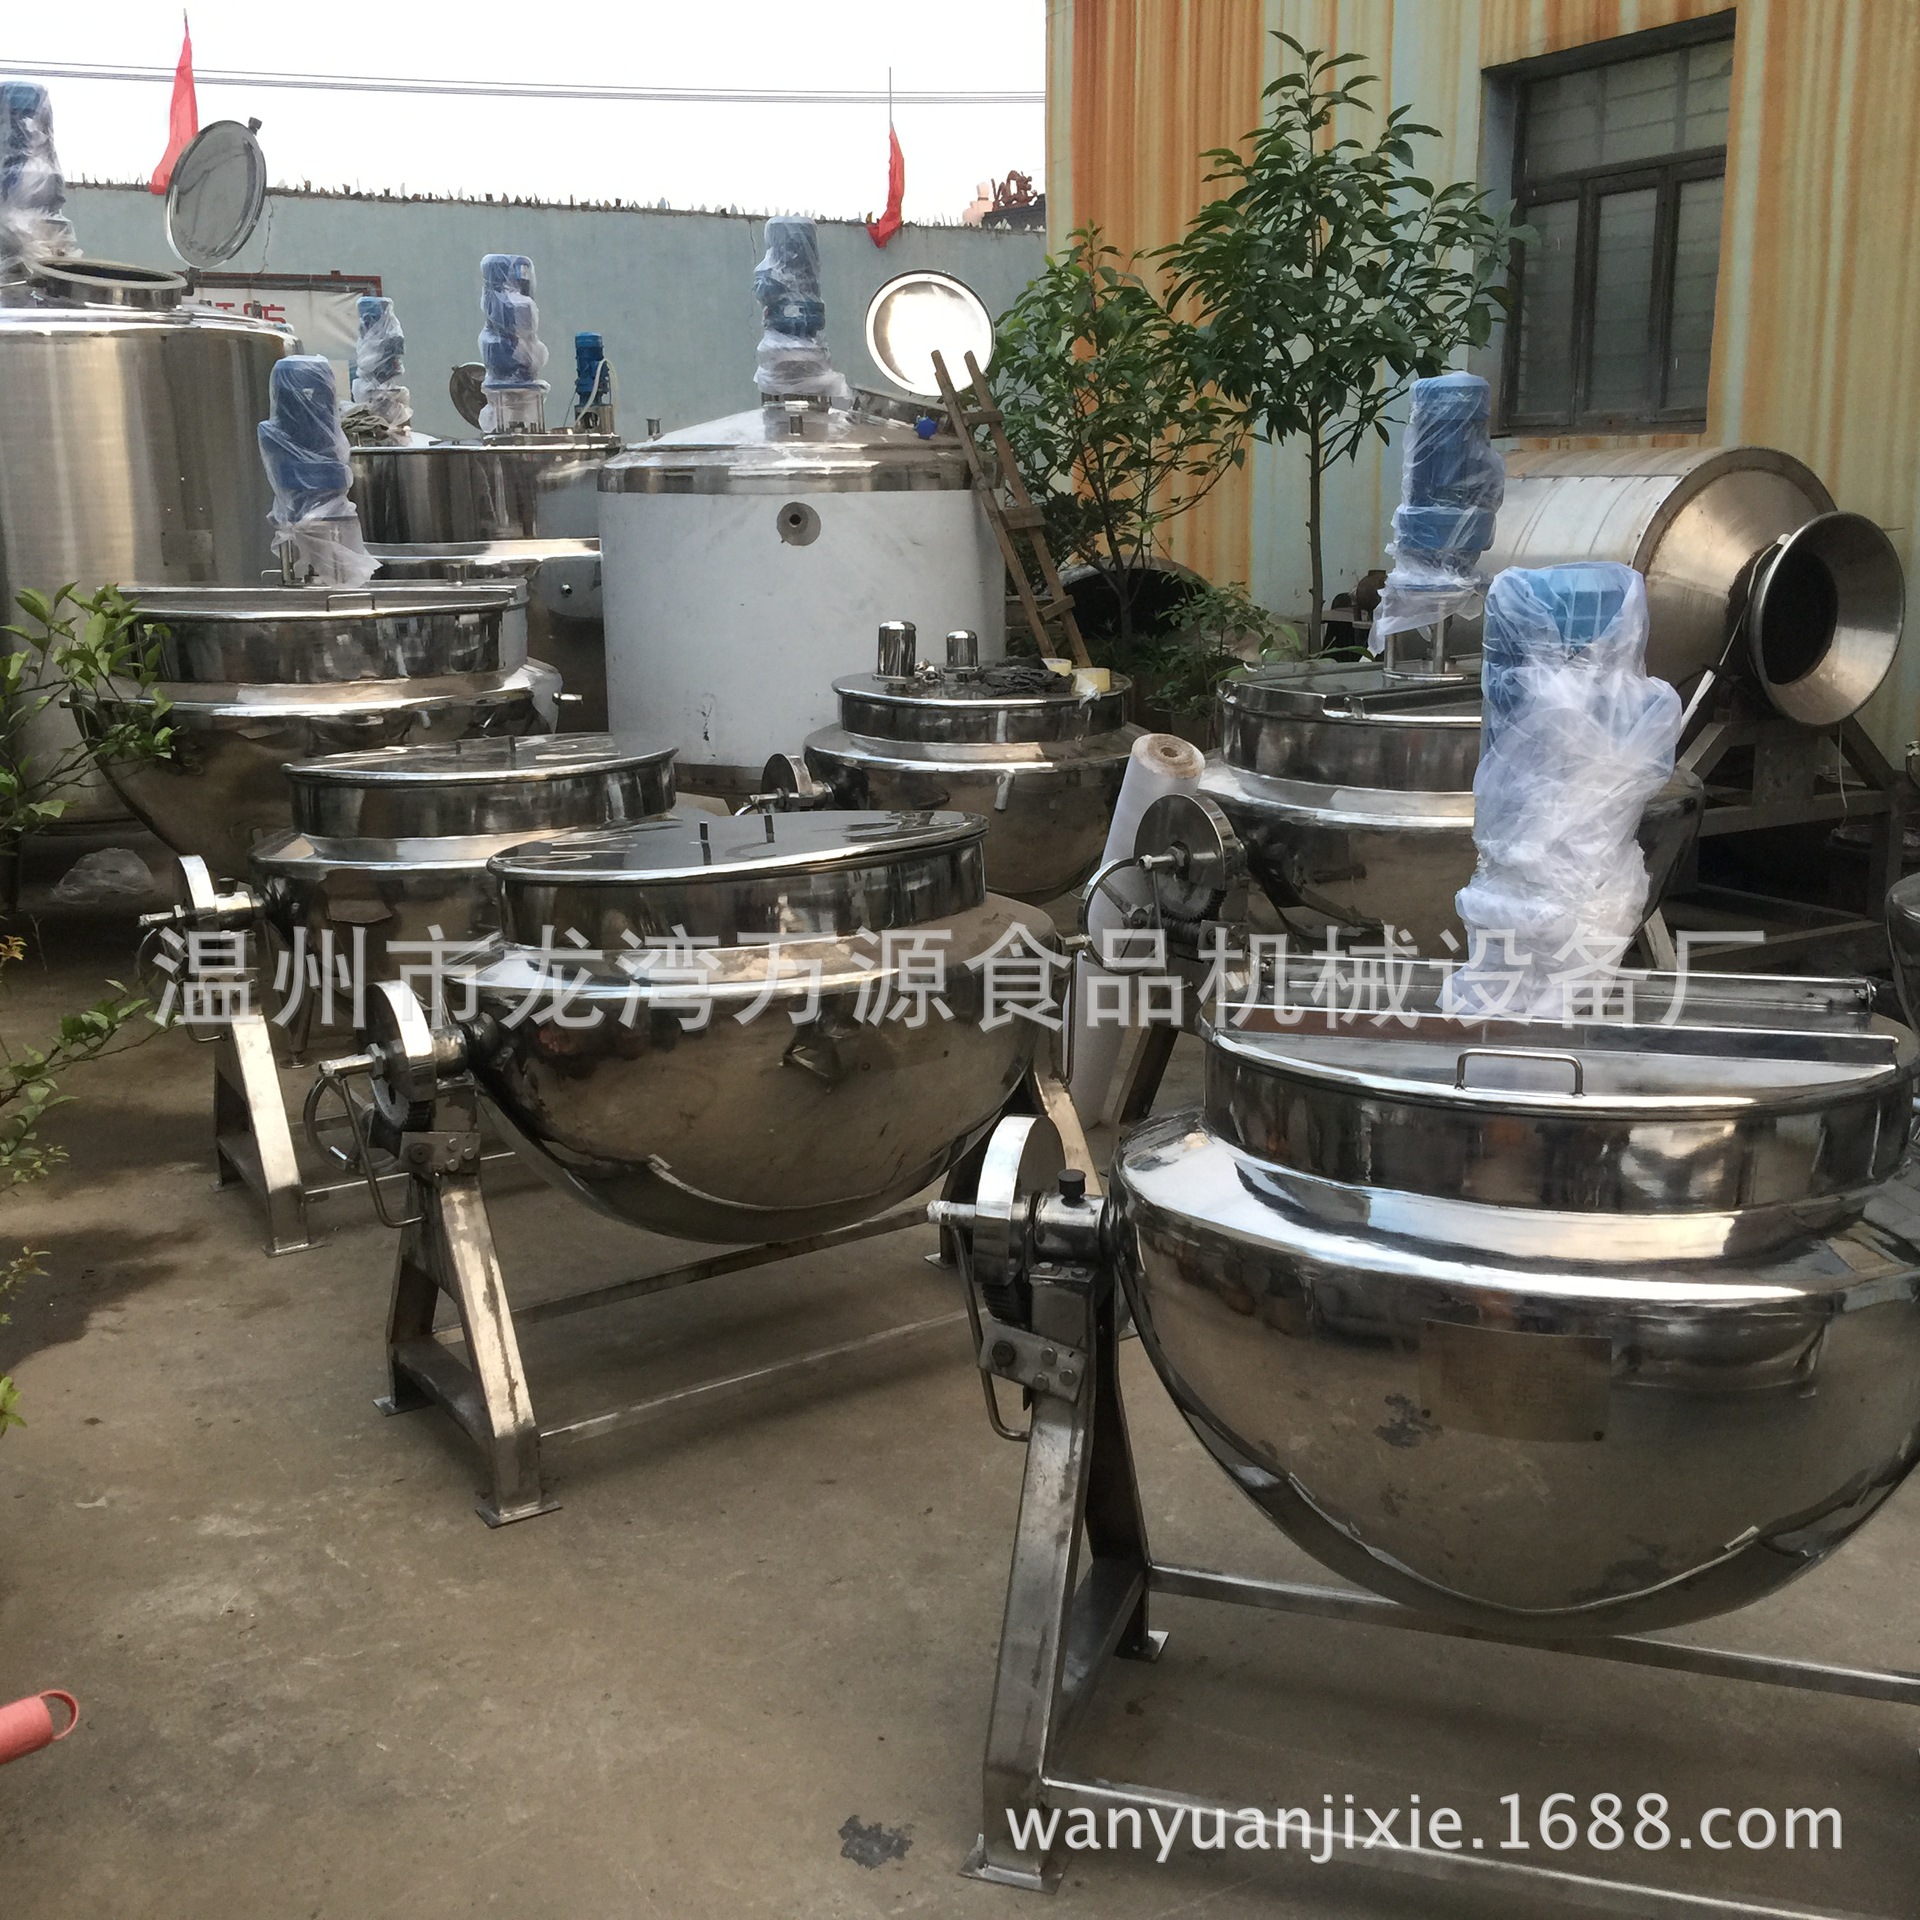 蒸汽立式夹层锅(诚信温州) 不锈钢夹层锅 炊事设备 质量可靠